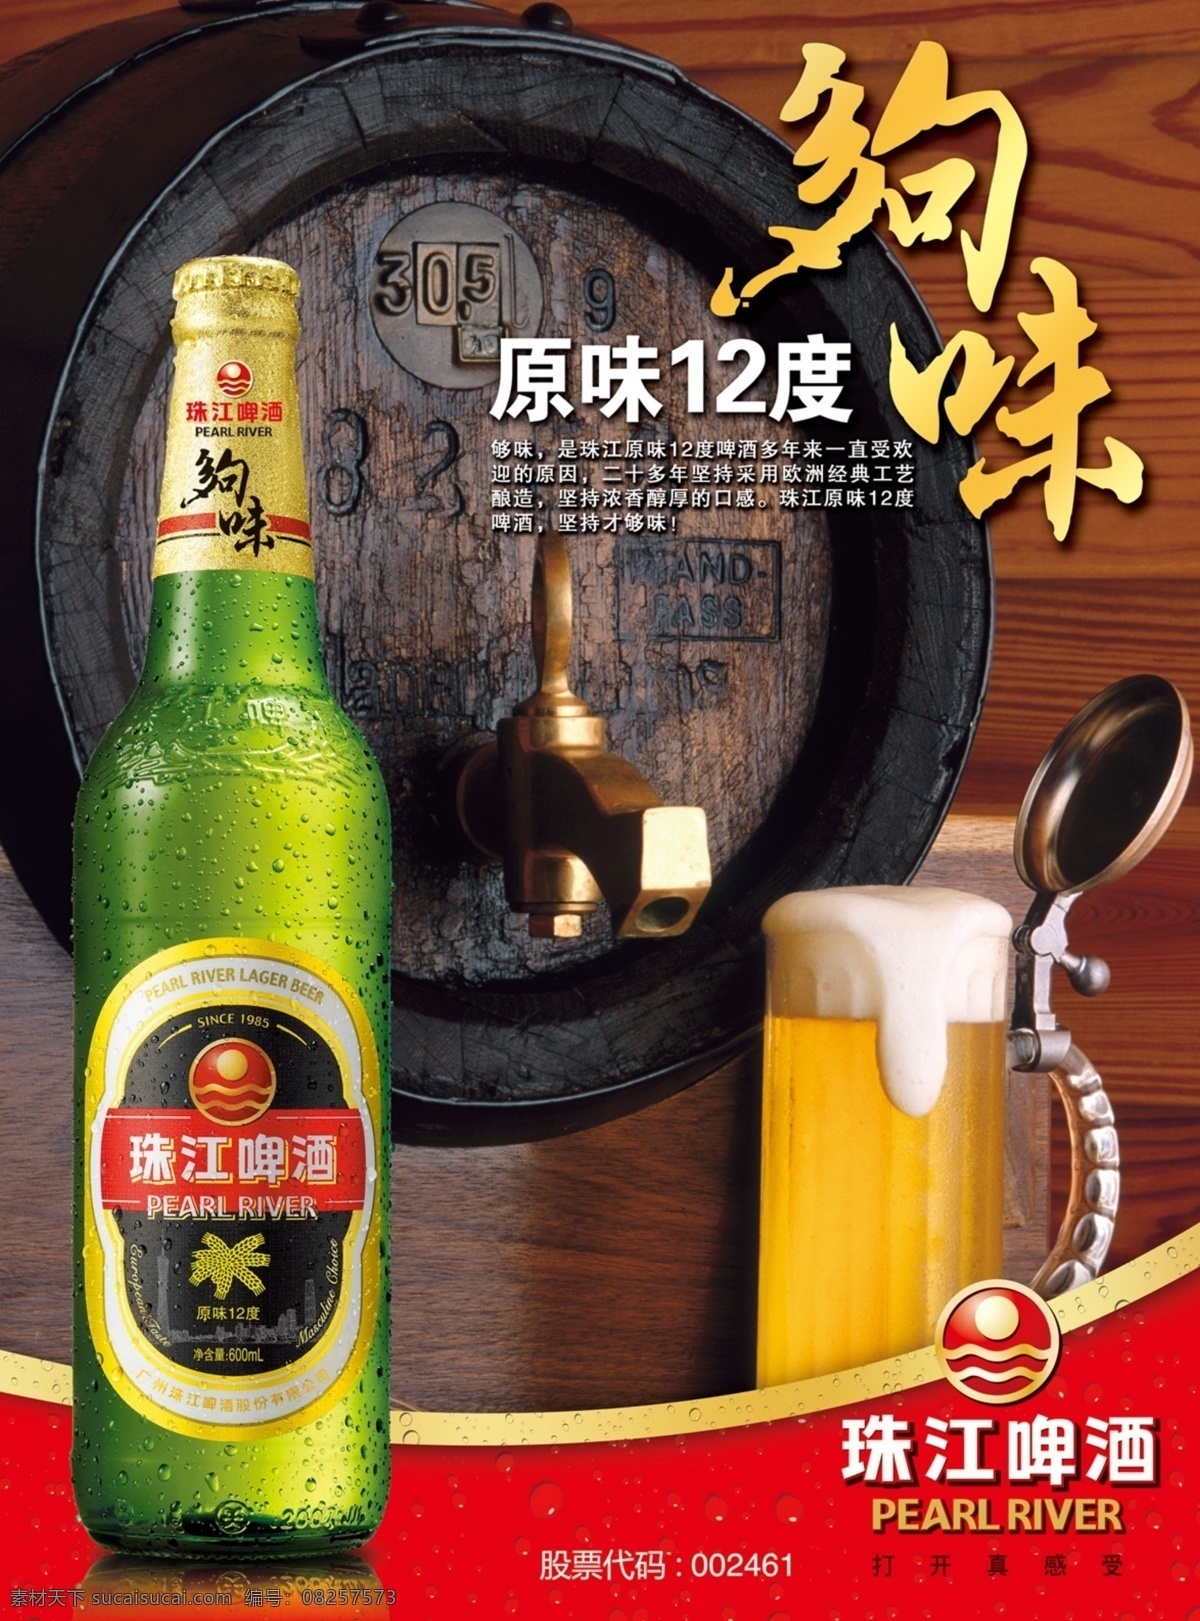 珠江啤酒 模版下载 老珠江 够味 酒桶 啤酒 广告 源文件